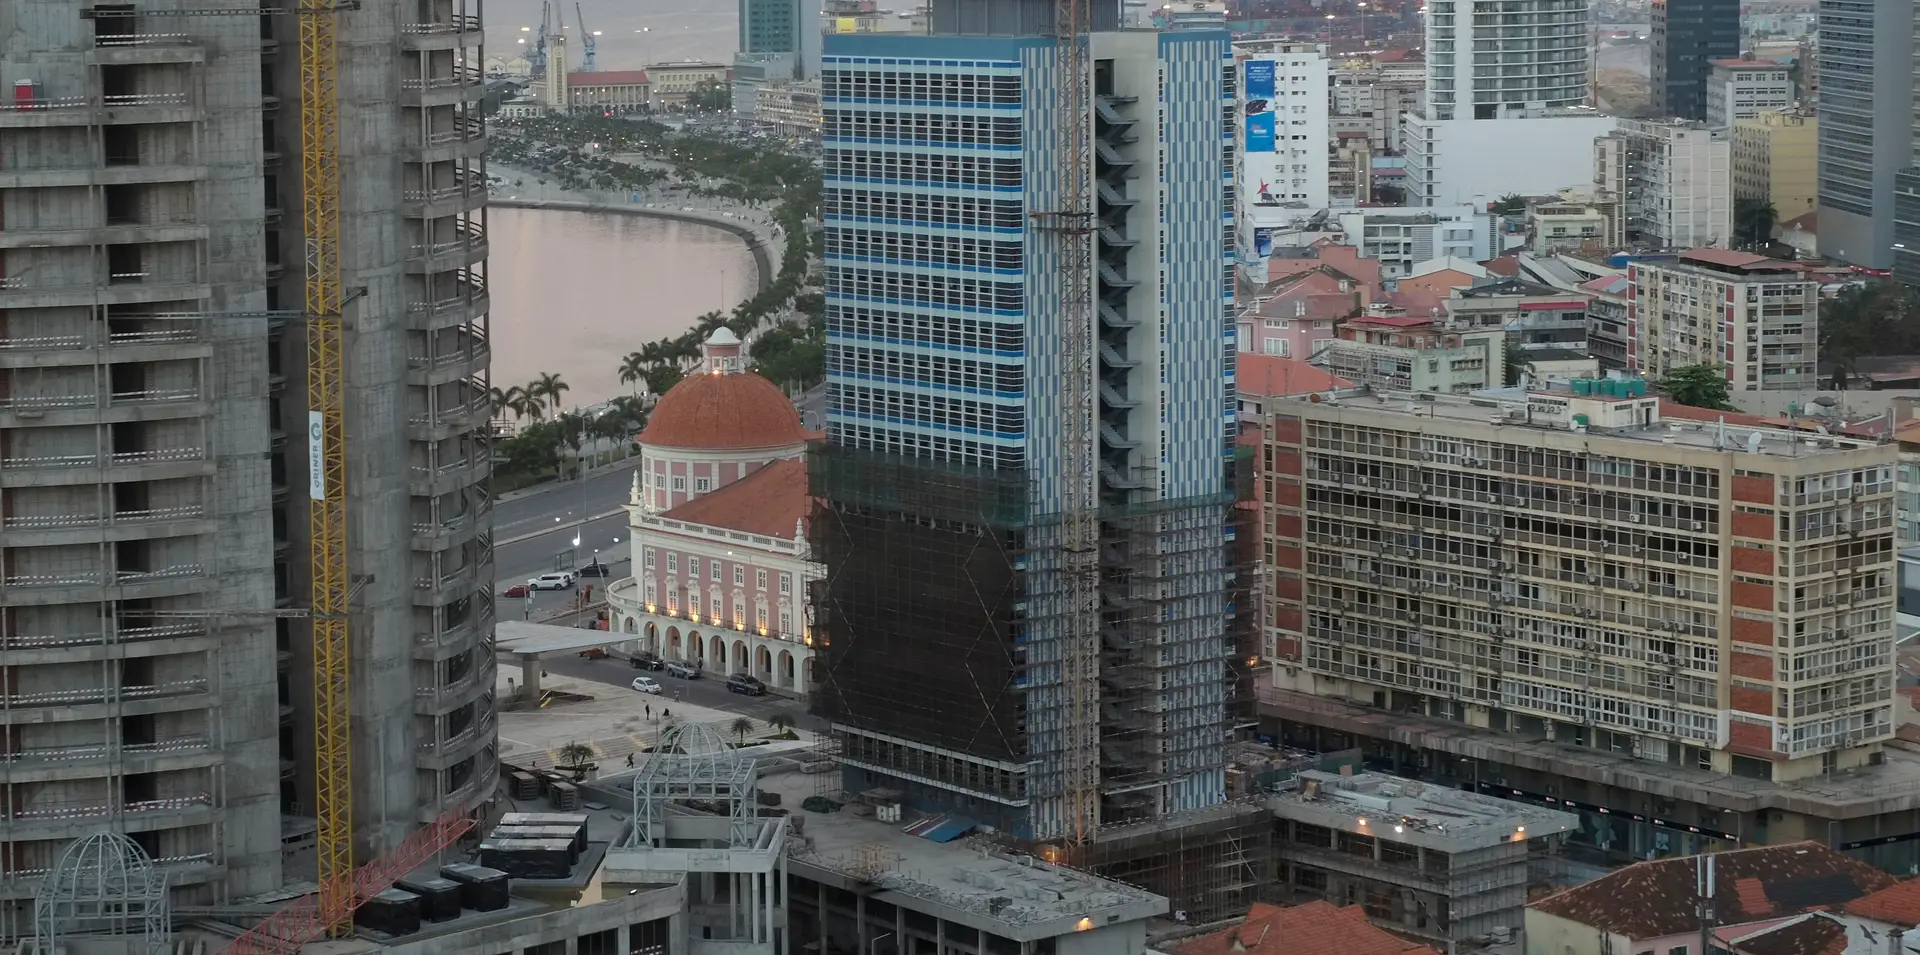 Sede do Banco de Angola (edifício cor de rosa) e baía de Luanda ao fundo